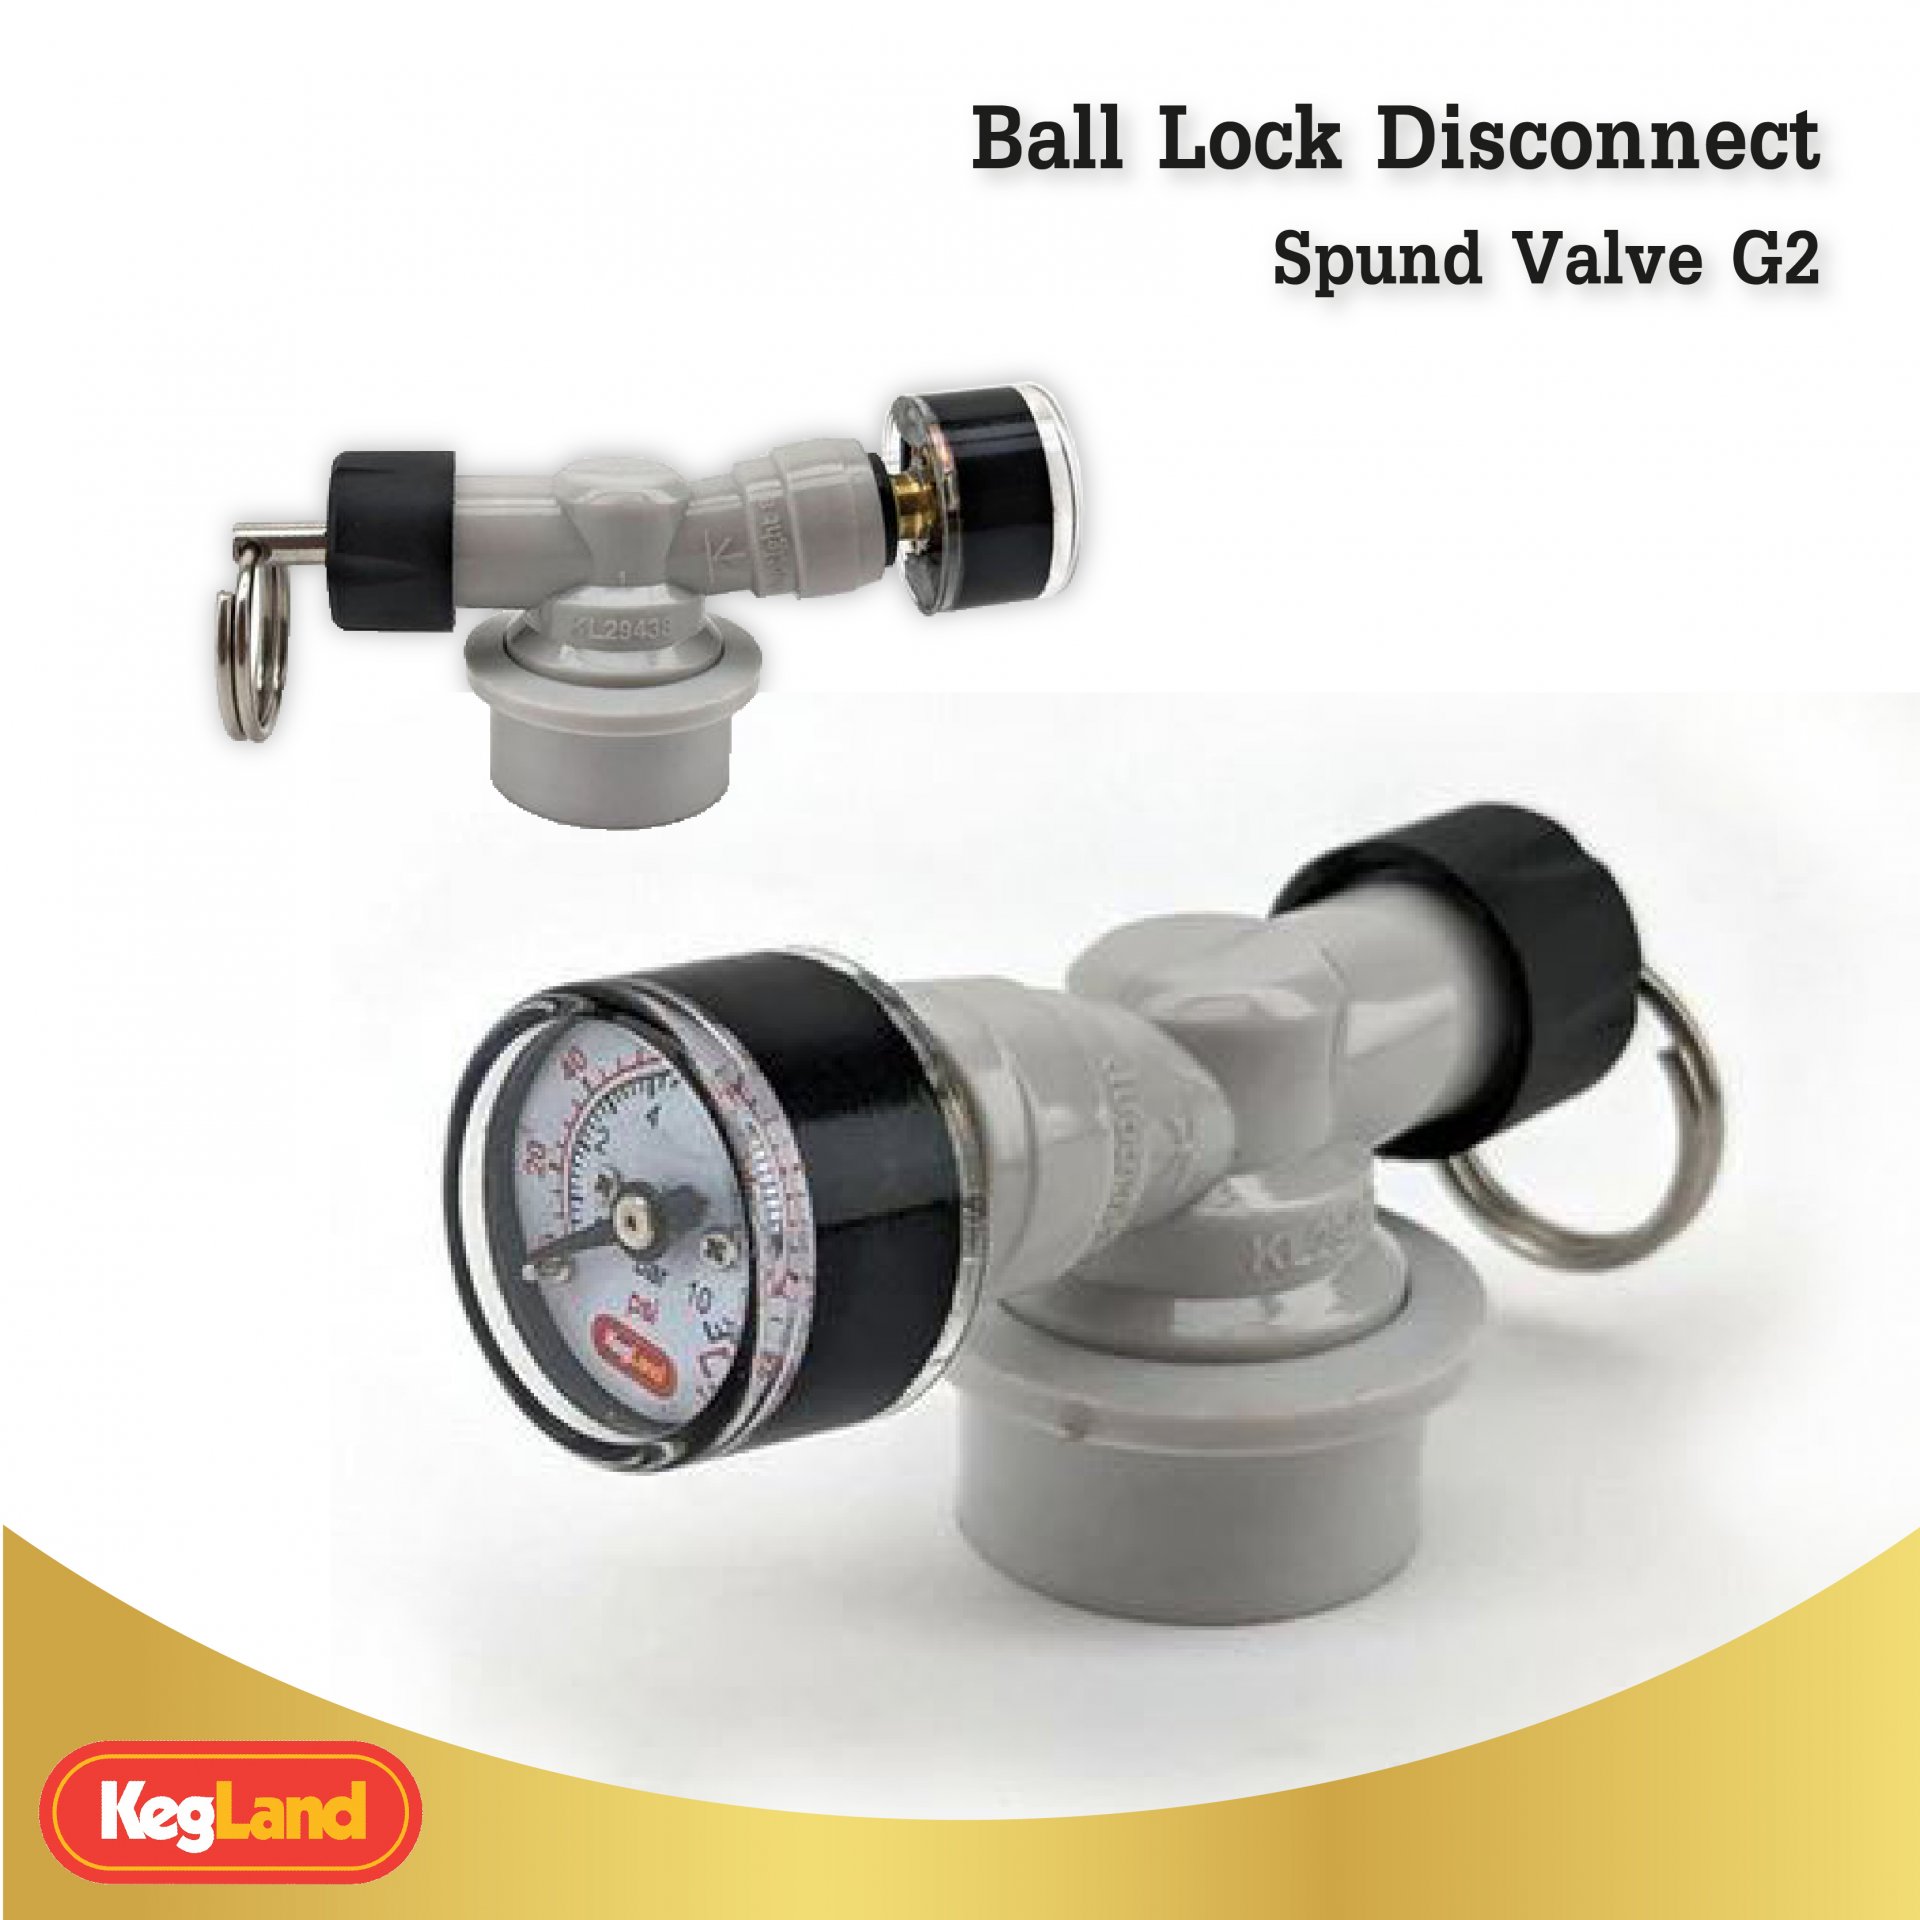 Ball Lock Disconnect Spund Valve G2